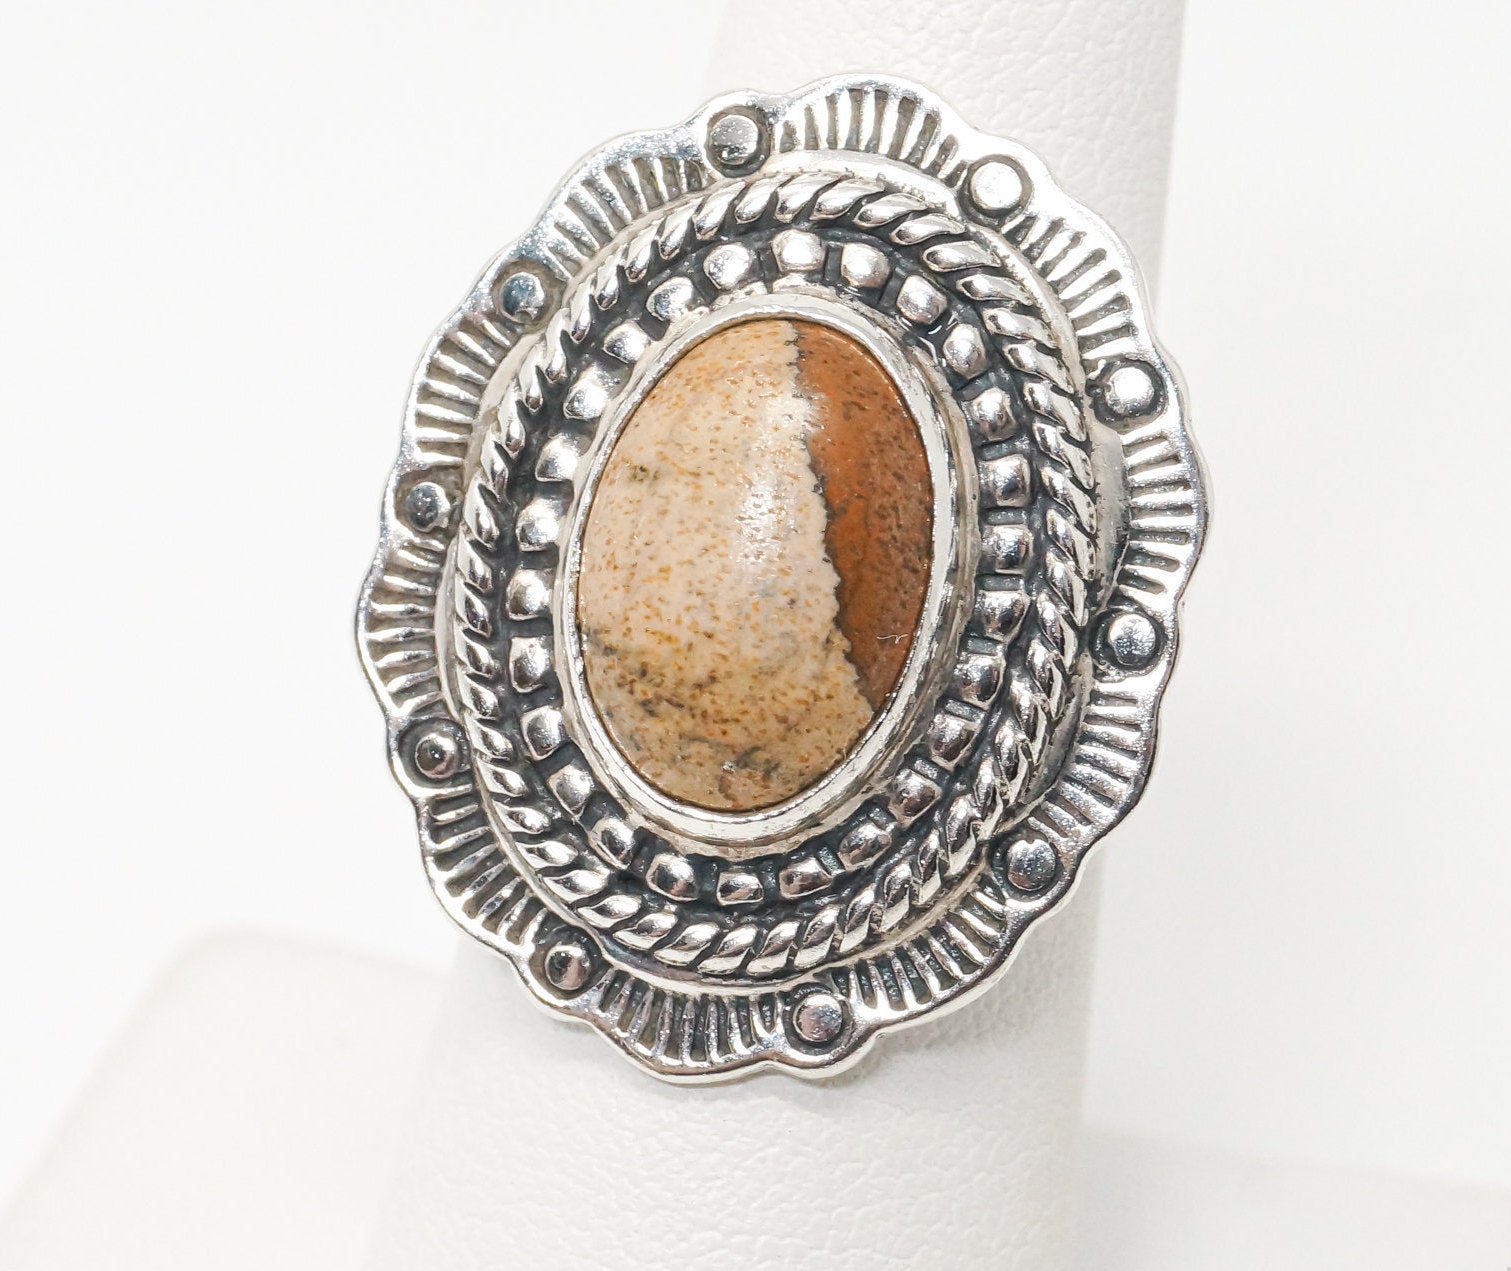 Vintage Native Designer Carolyn Pollack Jasper Sterling Silver Ring SZ 6.75